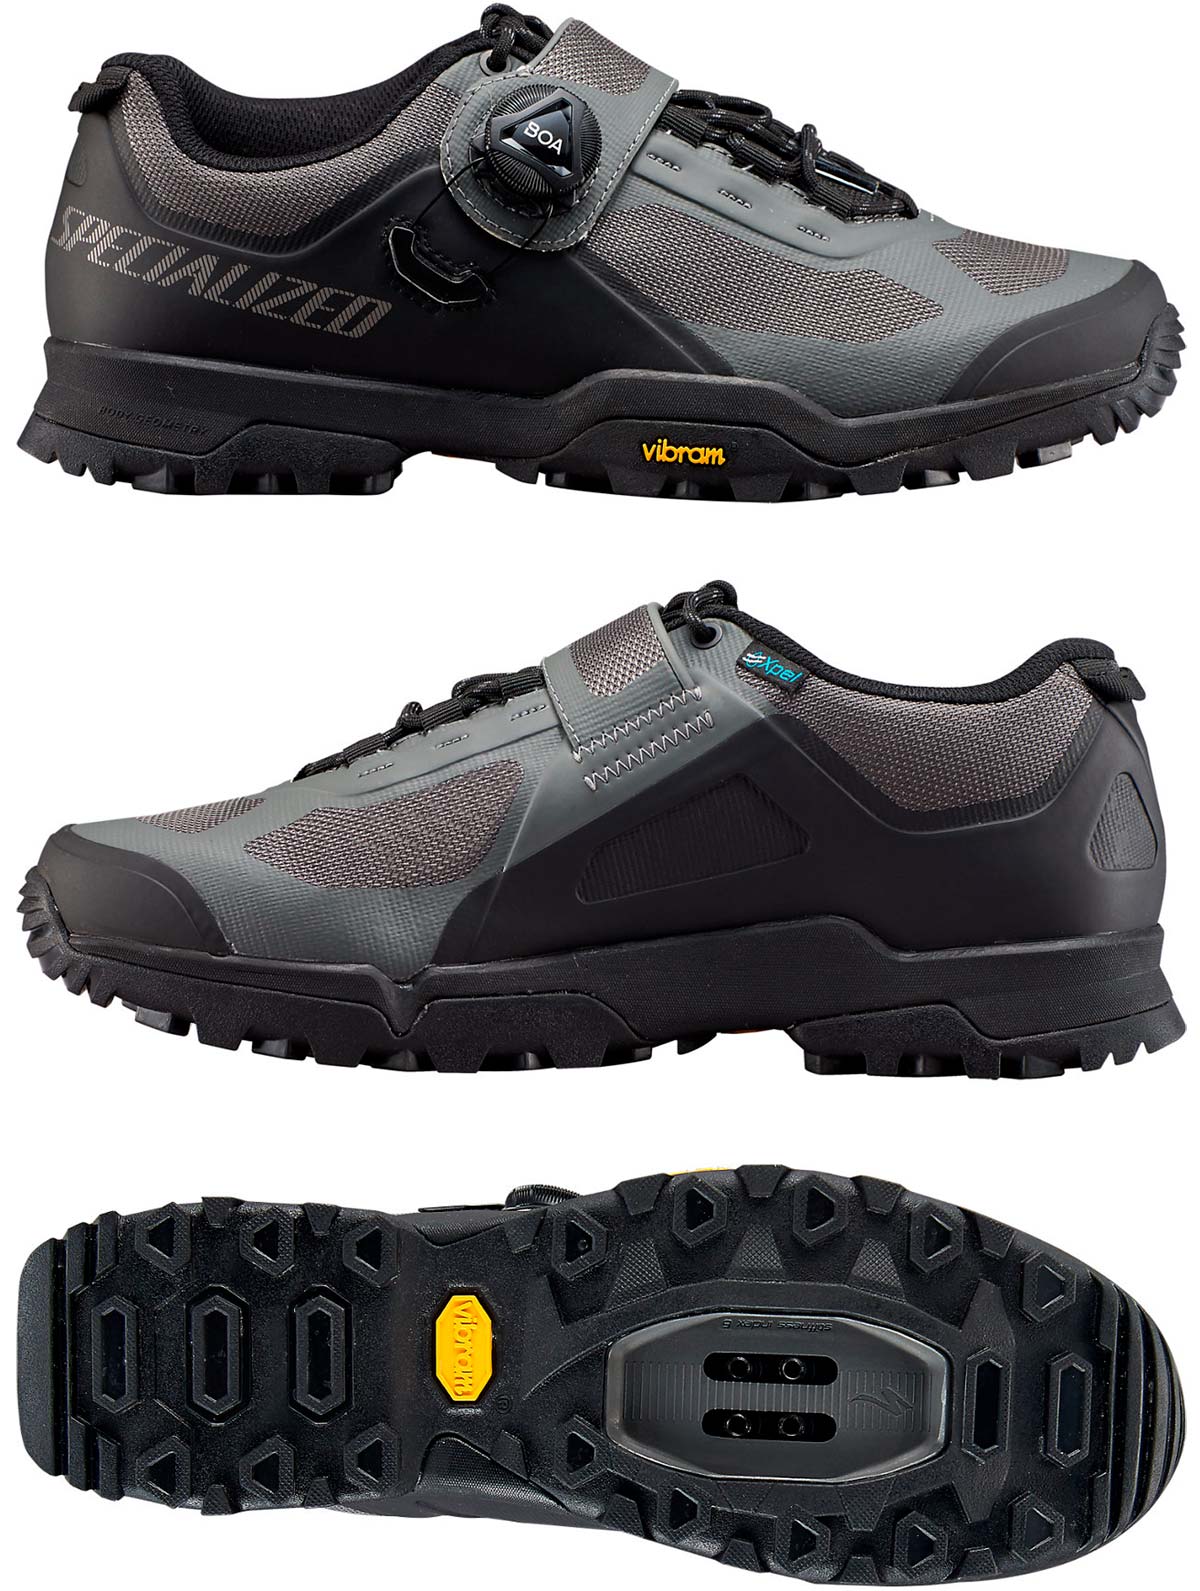 En TodoMountainBike: Specialized Rime 2.0, unas zapatillas diseñadas para pedalear y caminar en zonas de alta montaña